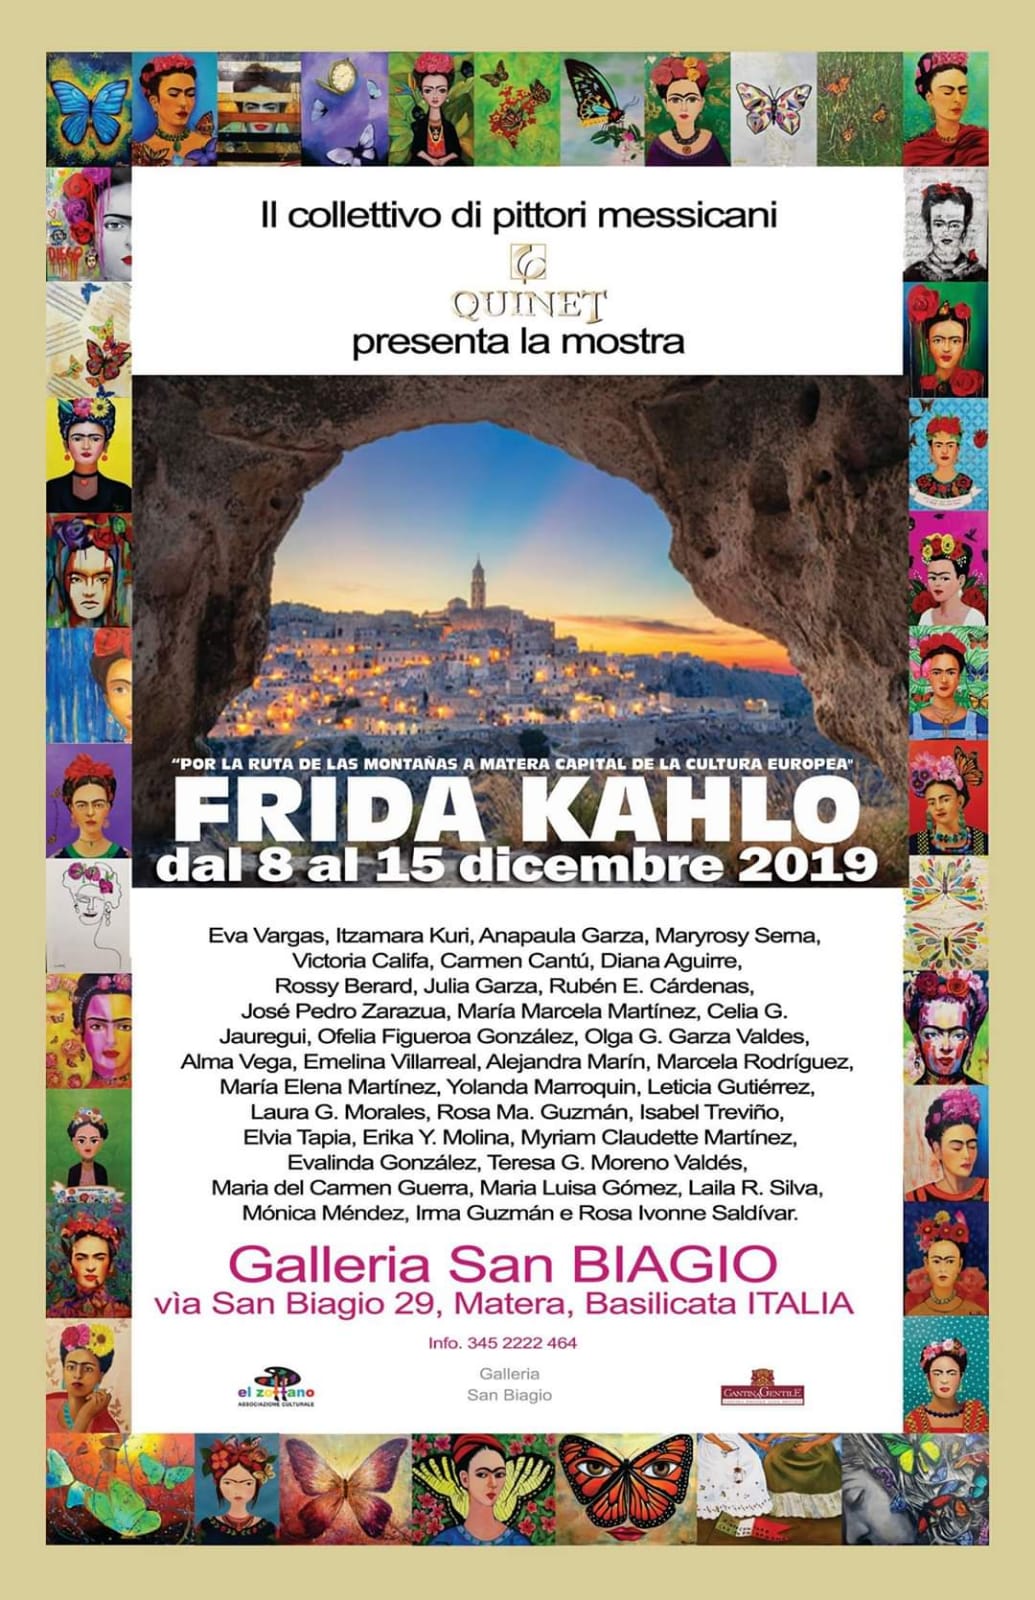 A Matera la mostra “Por la ruta de las montañas a Italia” dedicata a Frida Kahlo del collettivo Quintet Galeria